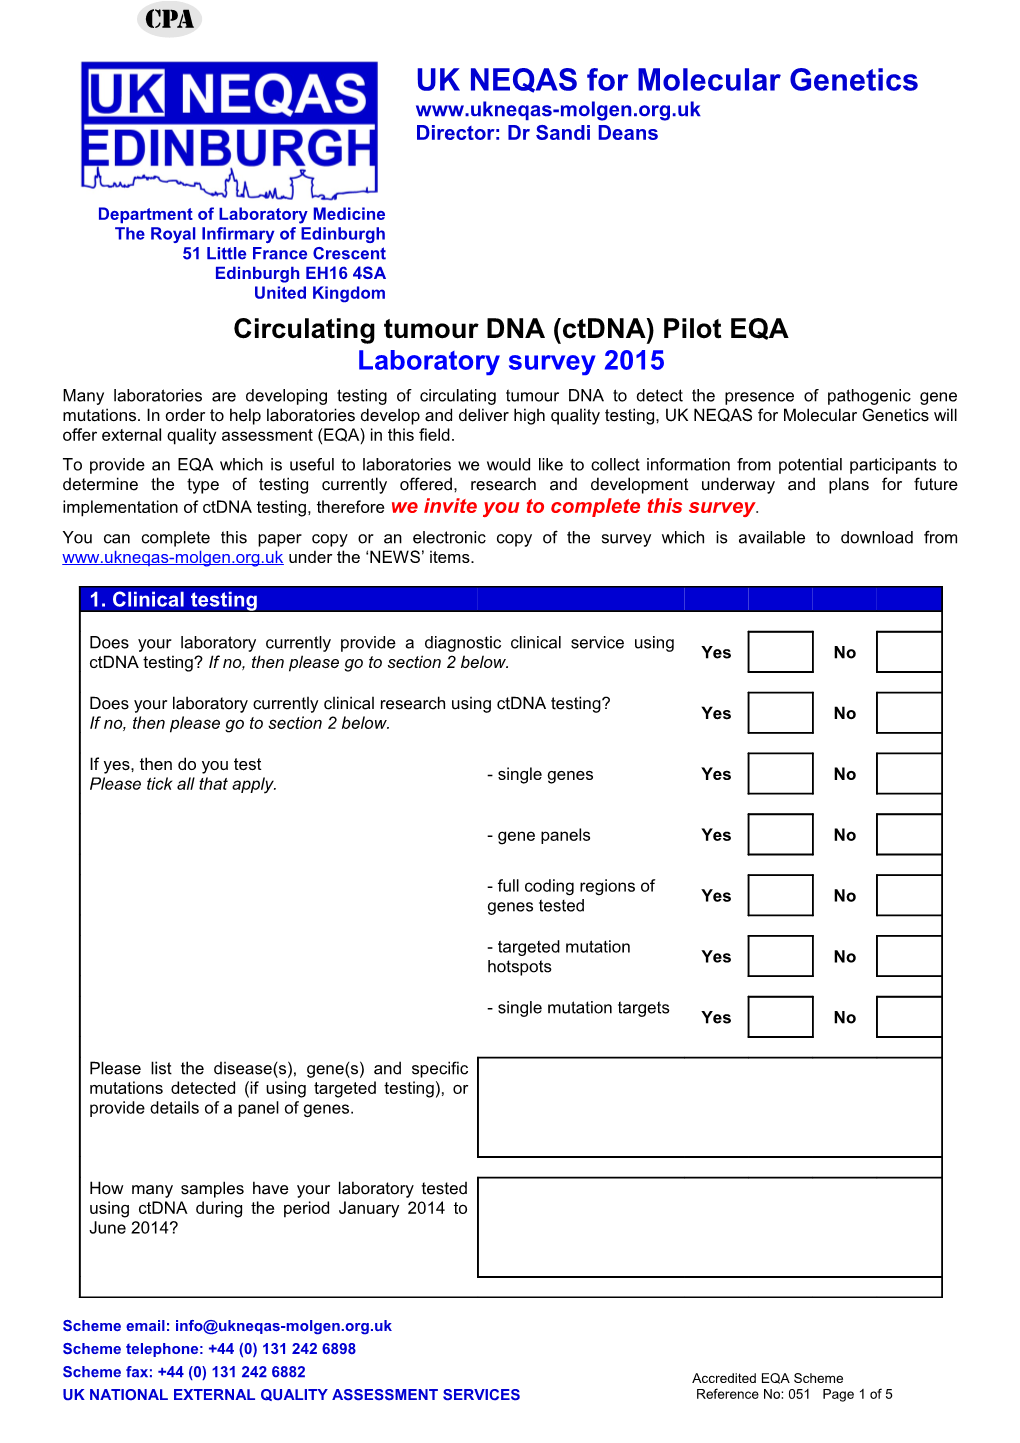 Molecular Genetics External Quality Assessment Scheme 2013